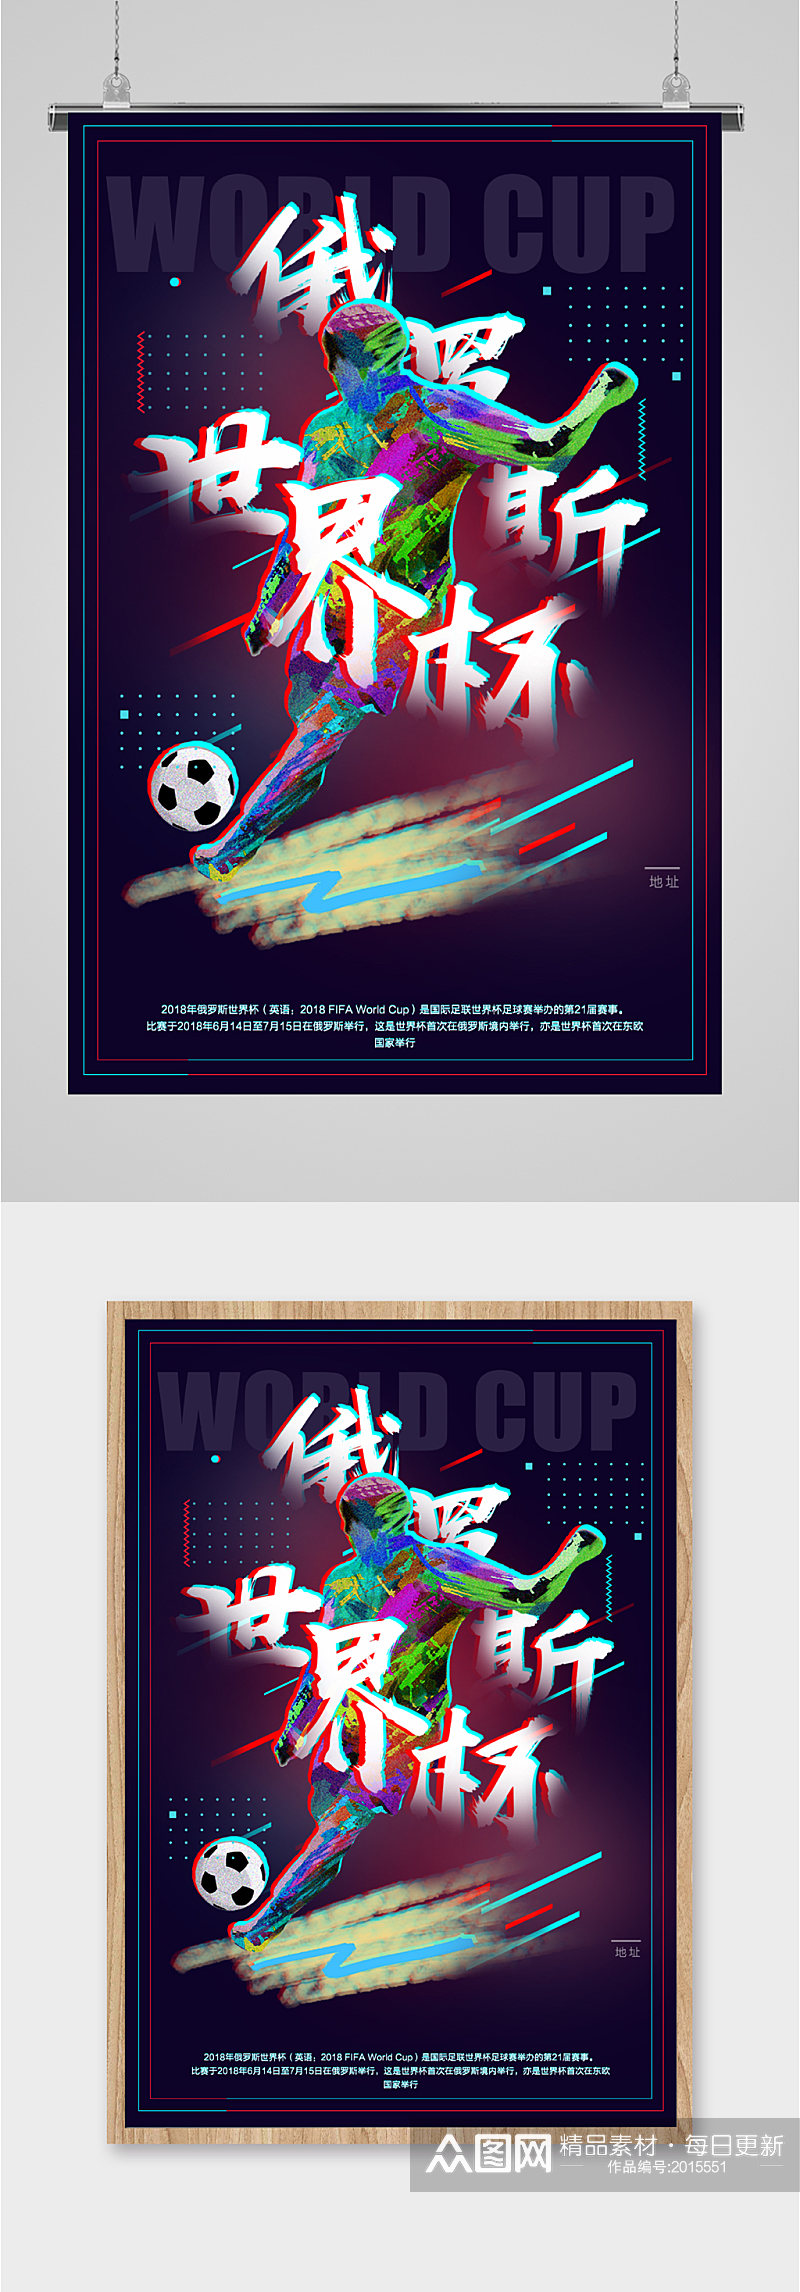 俄罗斯世界杯海报素材